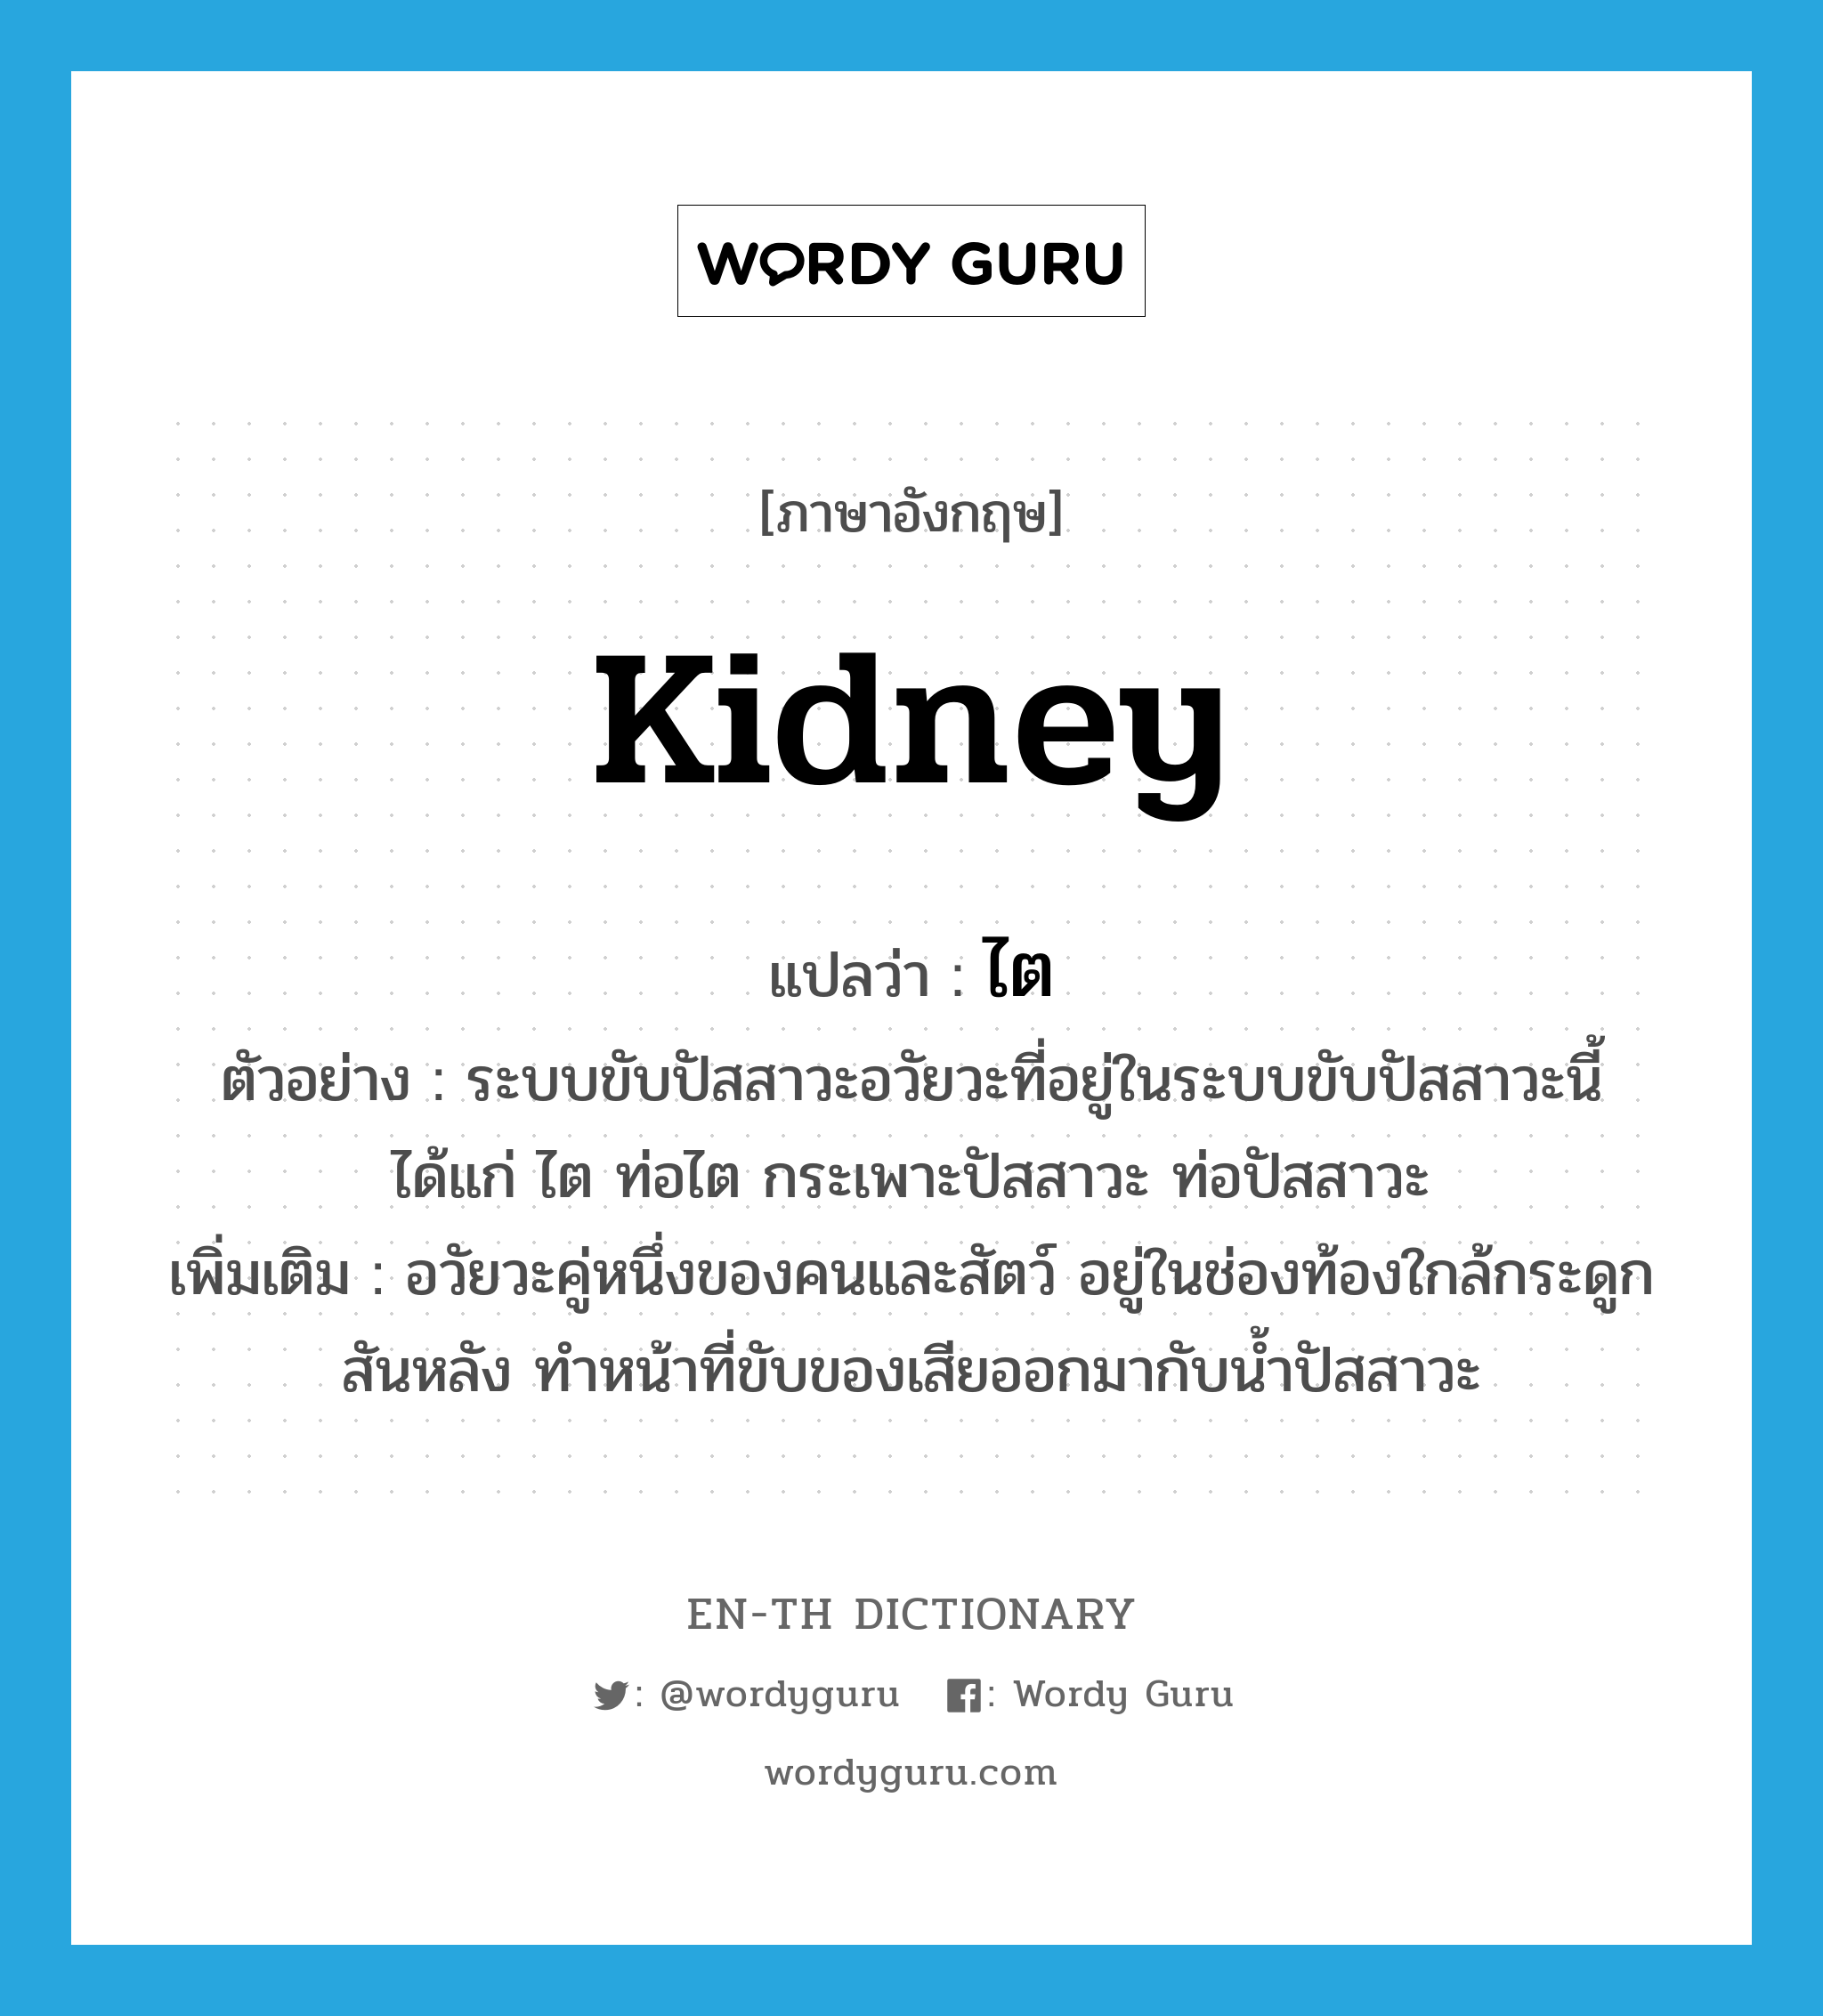 kidney แปลว่า?, คำศัพท์ภาษาอังกฤษ kidney แปลว่า ไต ประเภท N ตัวอย่าง ระบบขับปัสสาวะอวัยวะที่อยู่ในระบบขับปัสสาวะนี้ได้แก่ ไต ท่อไต กระเพาะปัสสาวะ ท่อปัสสาวะ เพิ่มเติม อวัยวะคู่หนึ่งของคนและสัตว์ อยู่ในช่องท้องใกล้กระดูกสันหลัง ทำหน้าที่ขับของเสียออกมากับน้ำปัสสาวะ หมวด N